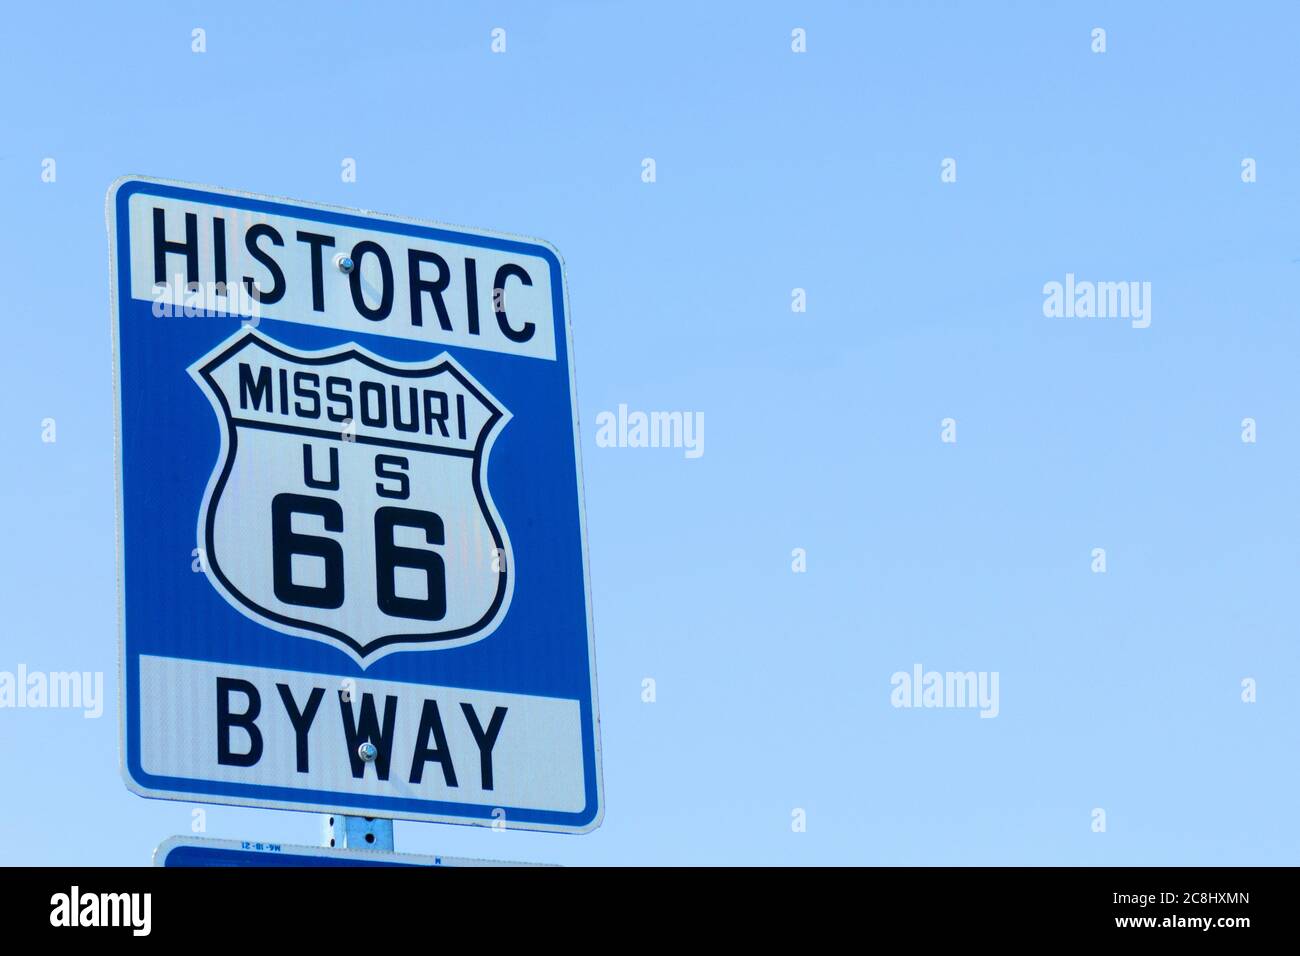 Missouri-Schild, historische Route 66 Byway-Schild. MO USA. Stockfoto